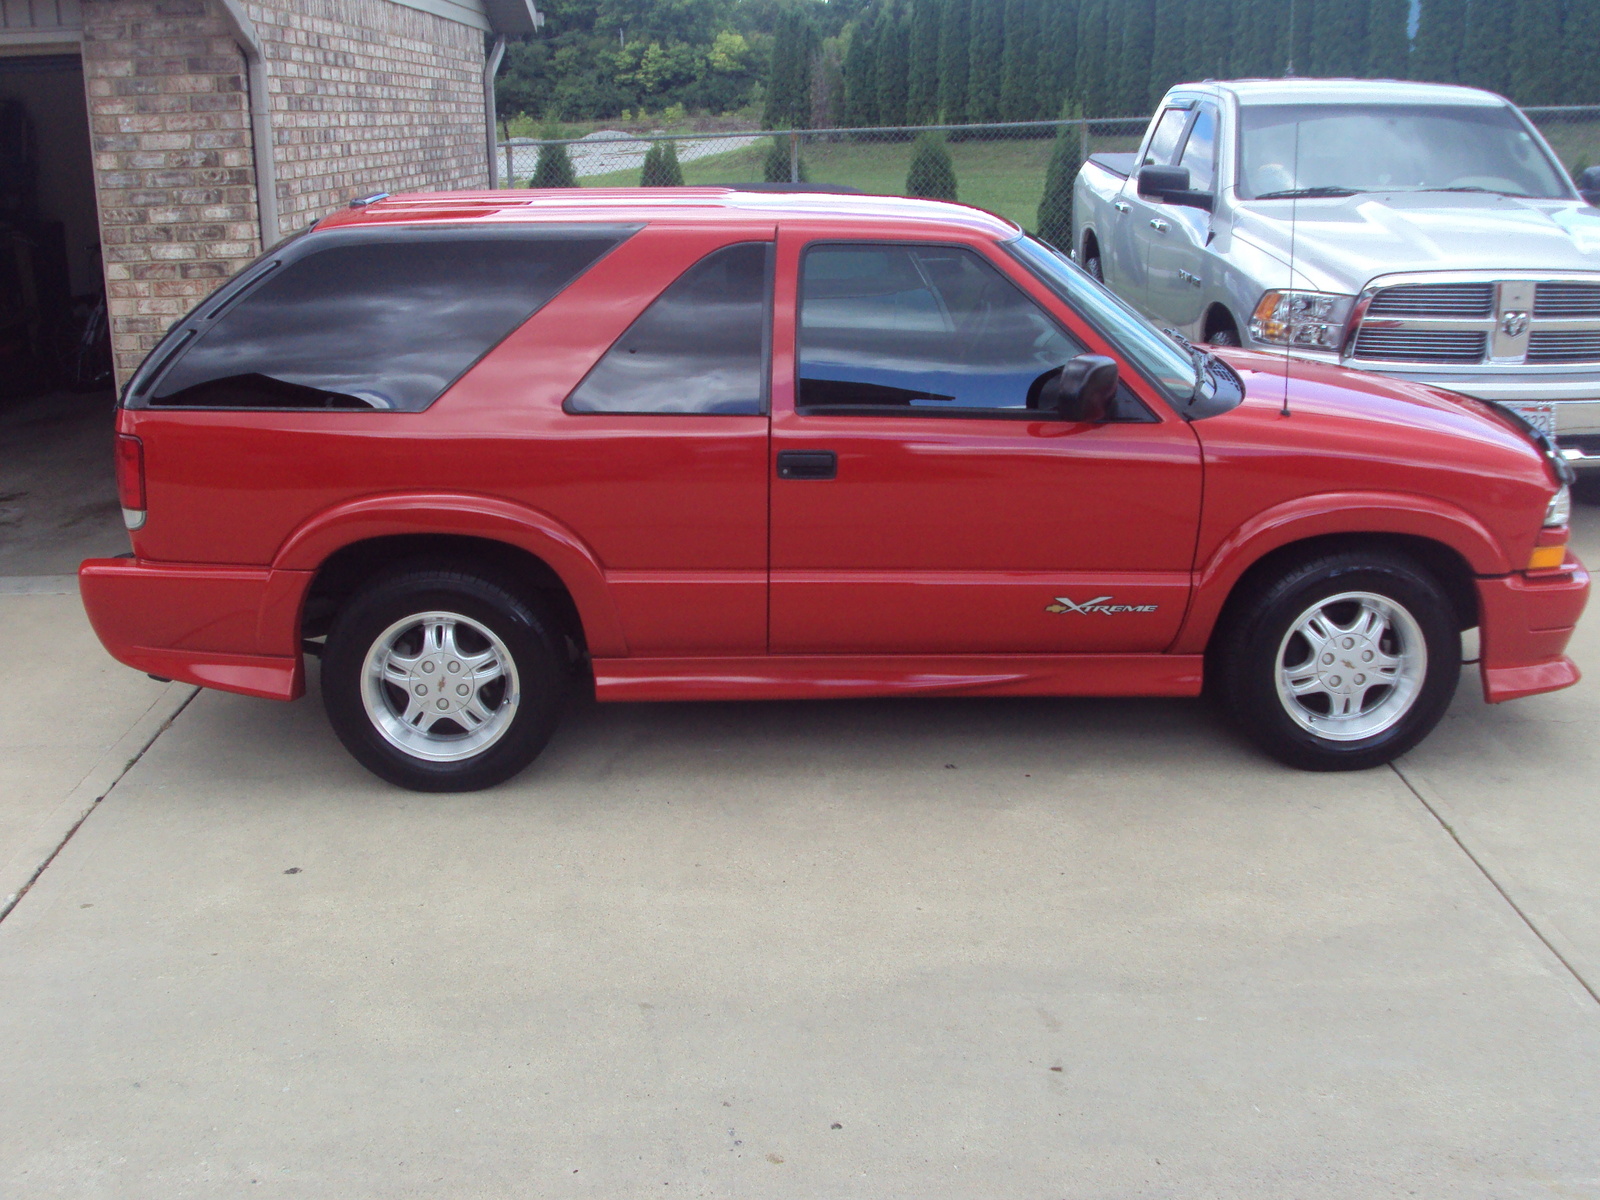 Chevrolet Blazer Xtreme